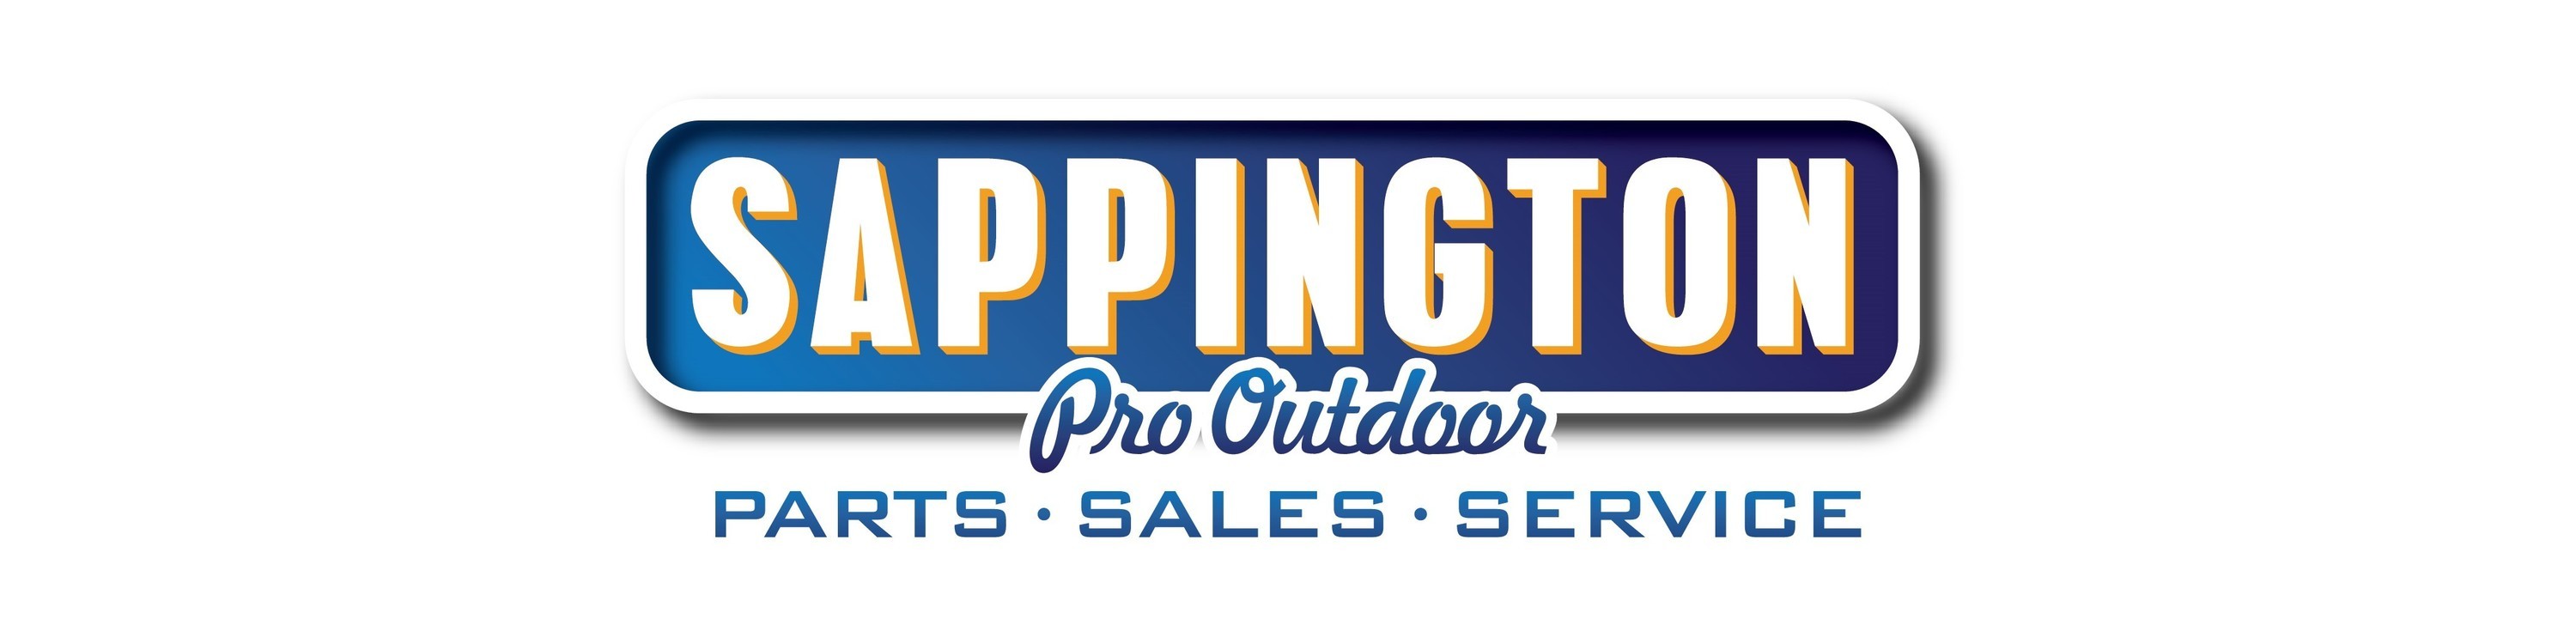 Sappington Pro Outdoor logo